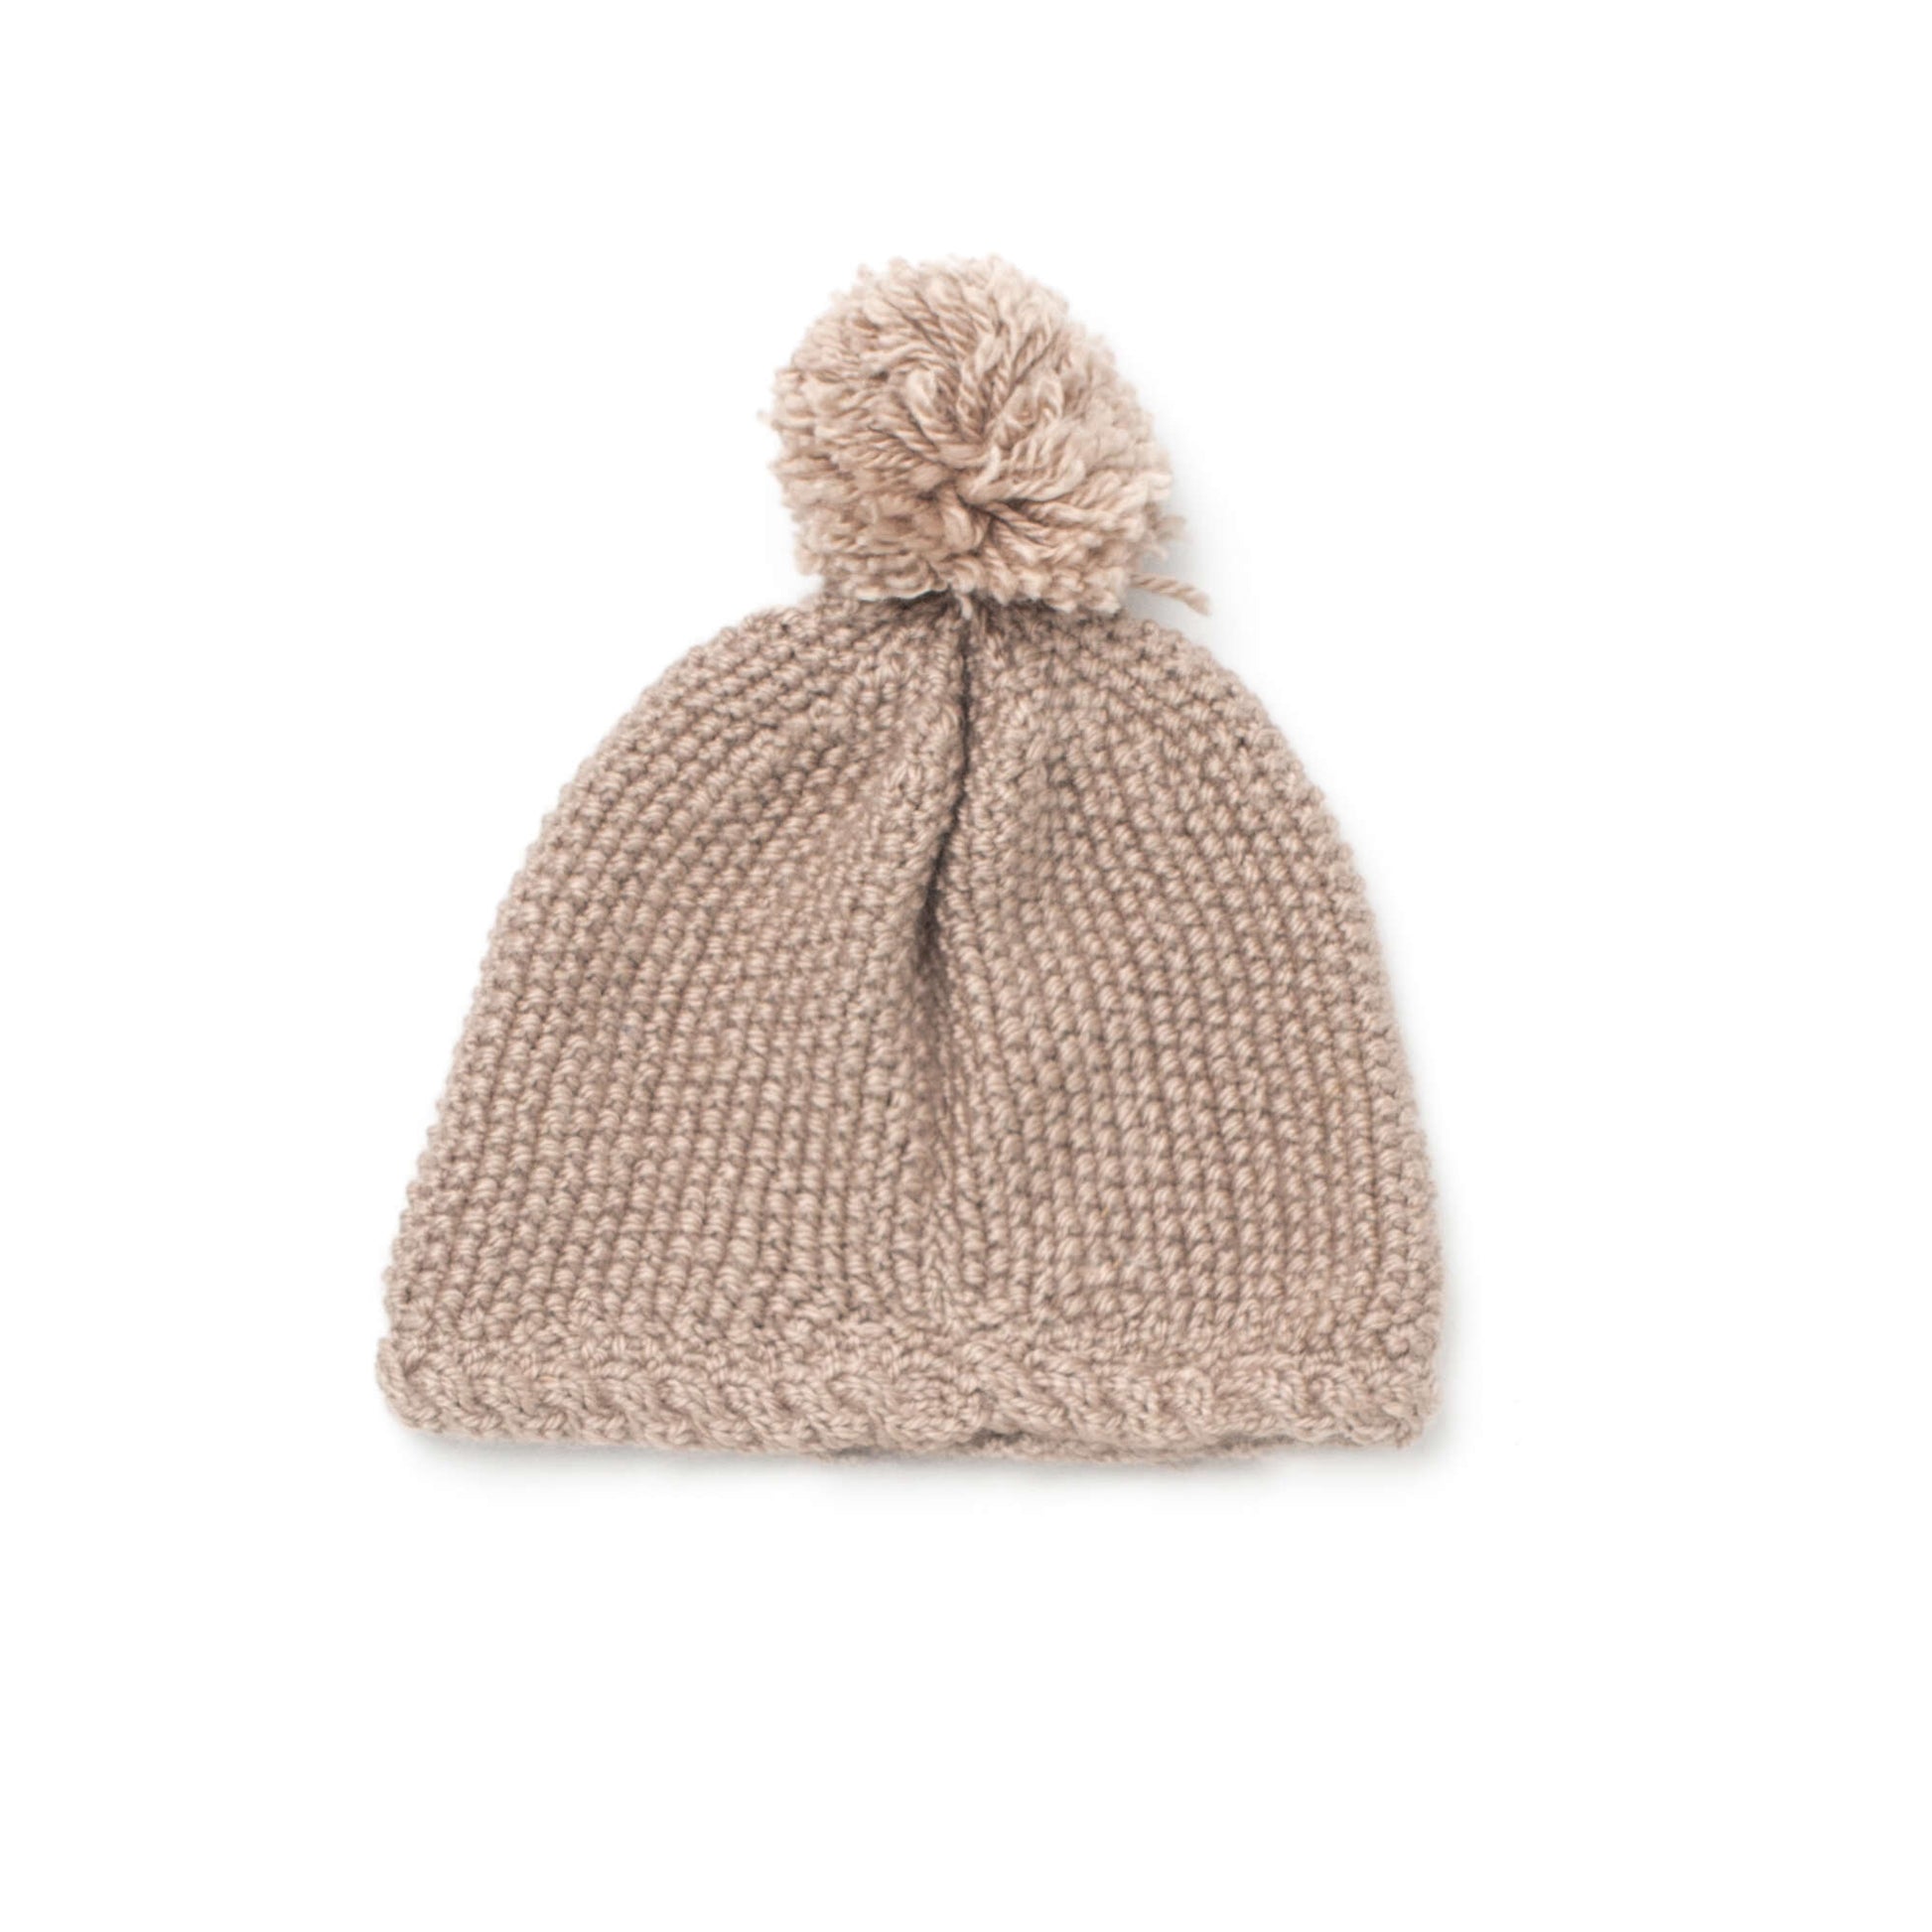 Free Bernat Knit Hat For Little Ears Pattern